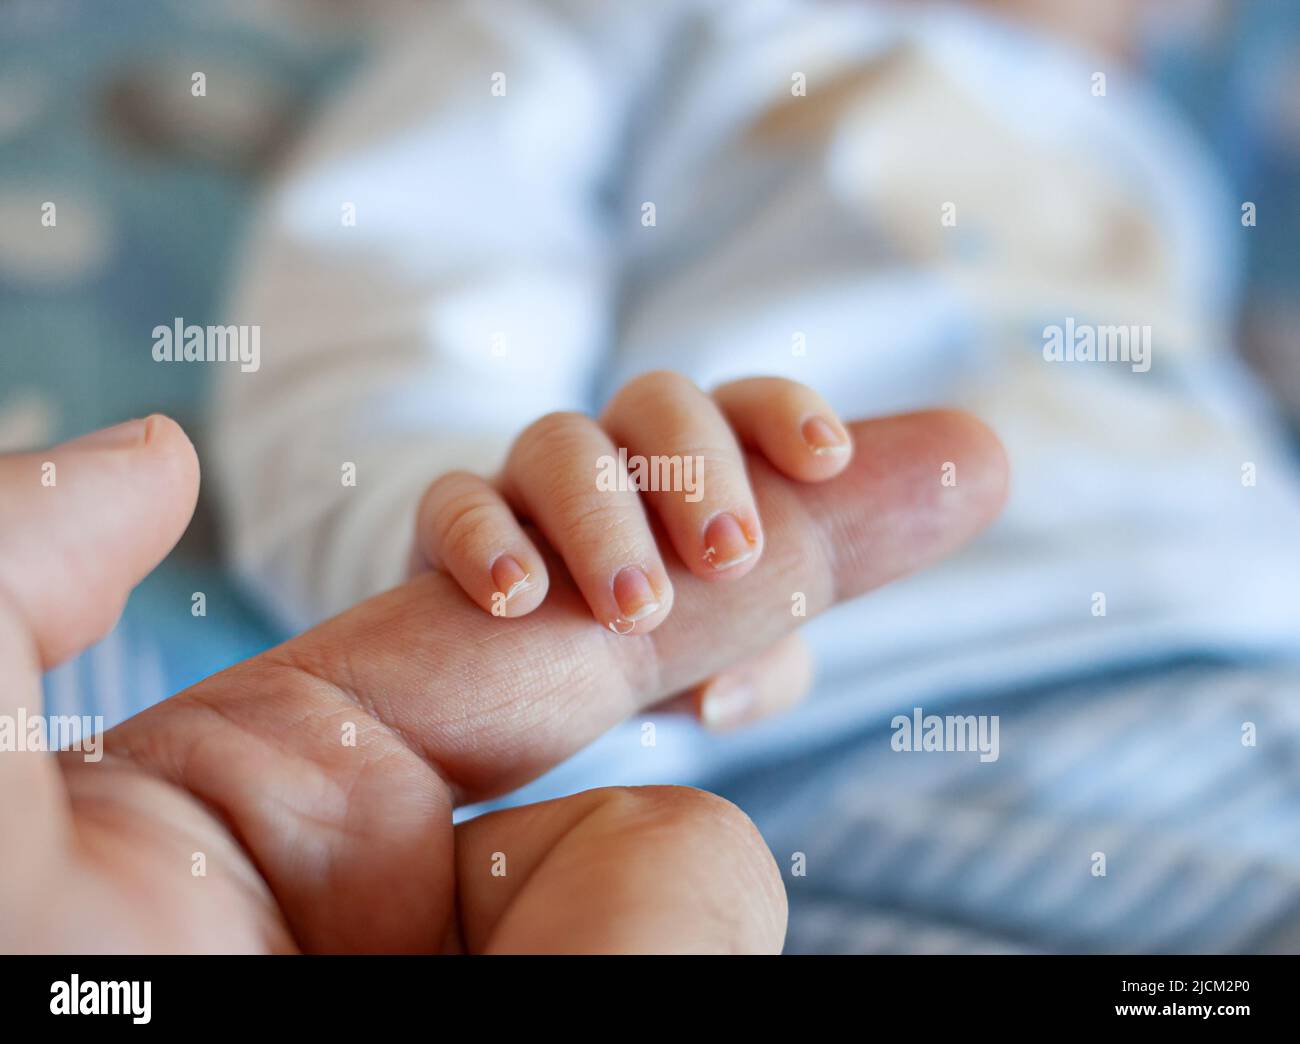 Una madre le hace una manicura a su bebé con uñas largas en forma de  garra y desata el estupor en las redes sociales